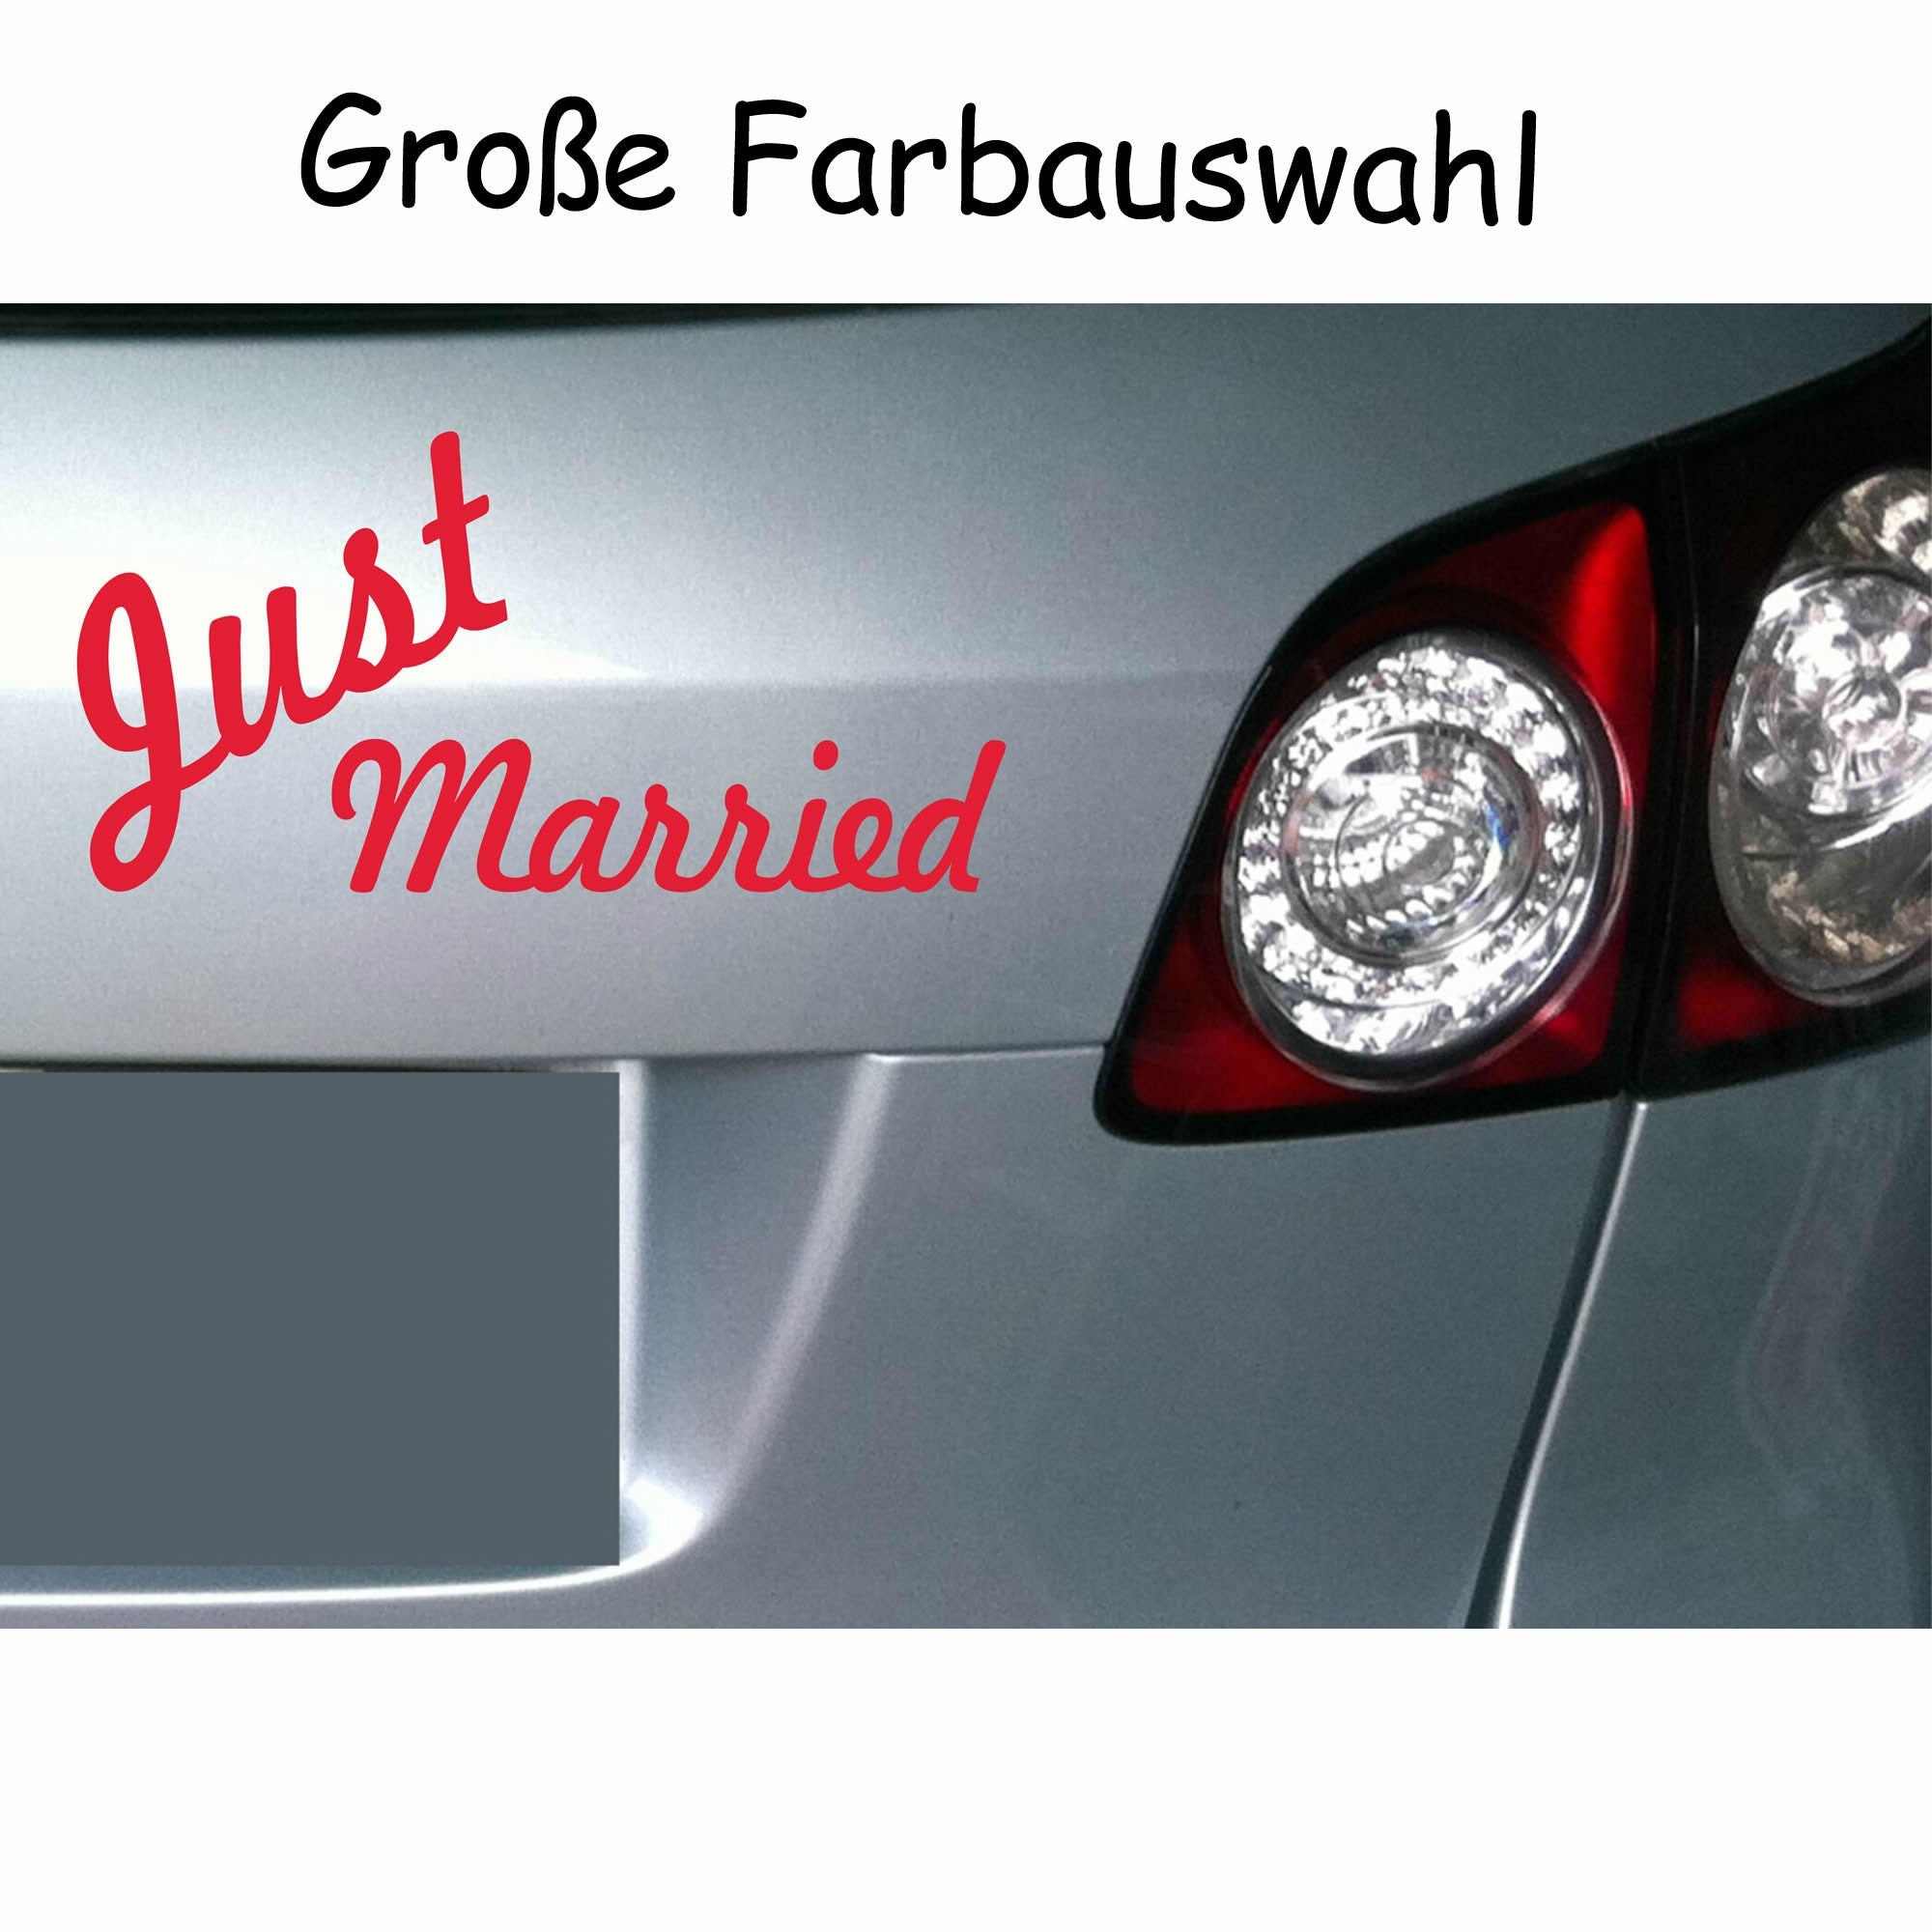 Just Married Folie Rot Aufkleber Auto Heck Deko Hochzeit Banner Brautpaar  KX055